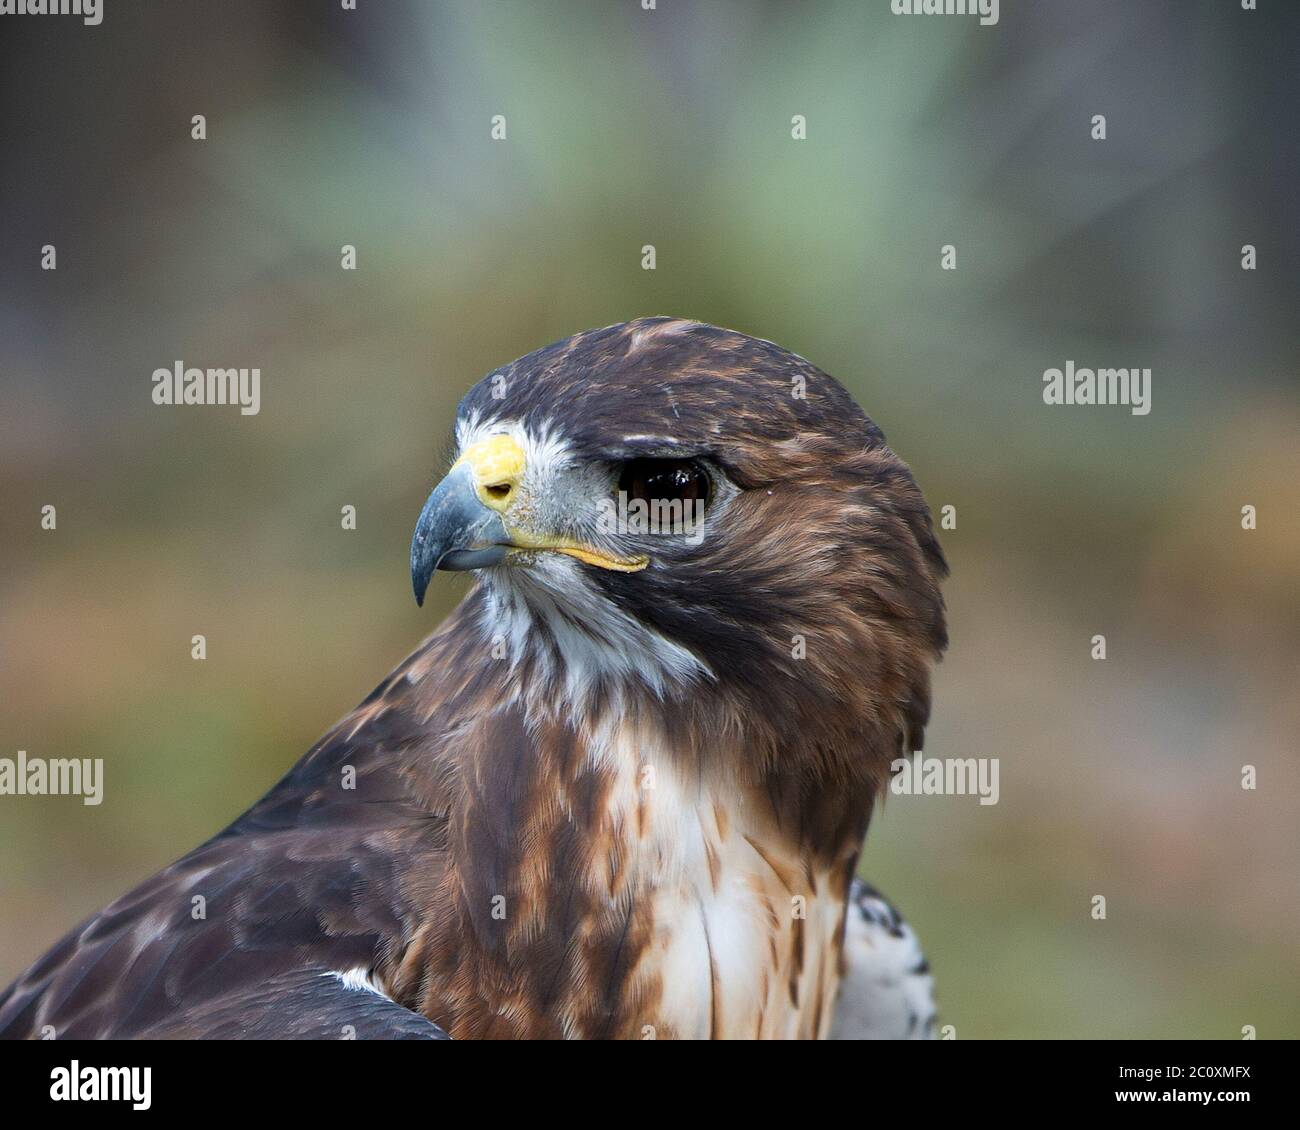 Hawk Vogelkopf Nahaufnahme zeigt Kopf, Auge, Schnabel, Gefieder mit einem unscharfen Hintergrund in seiner Umgebung und Umgebung. Stockfoto